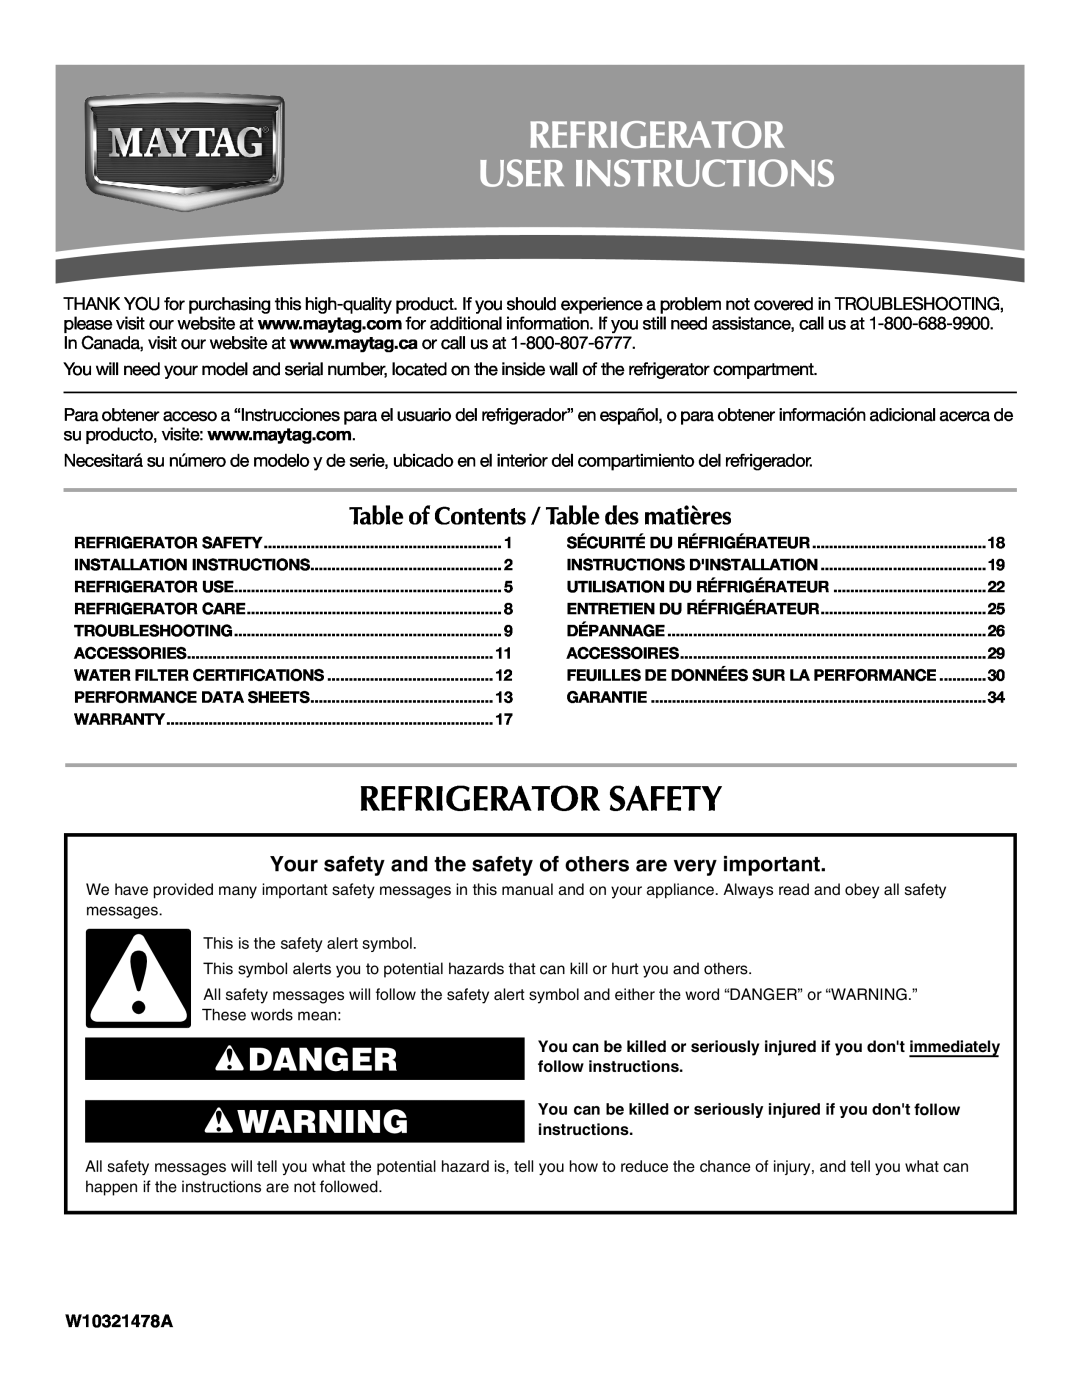 Maytag W10321478A installation instructions Refrigerator User Instructions, Refrigerator Safety, Danger 